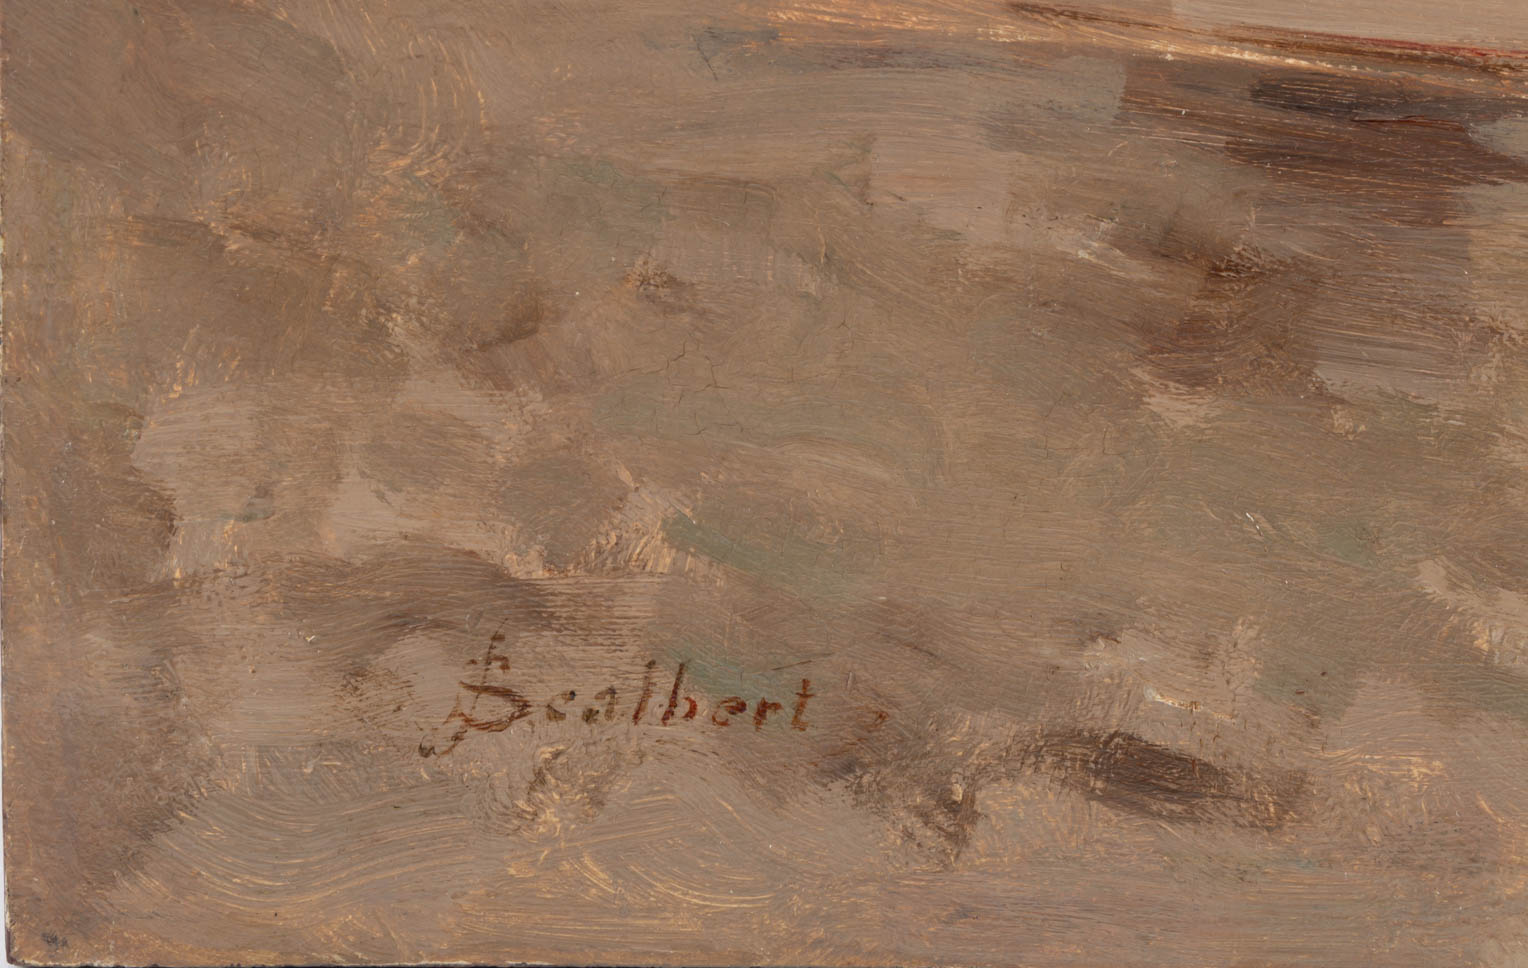 Jules SCALBERT (Douai, 1851 – Paris, 1928) 7